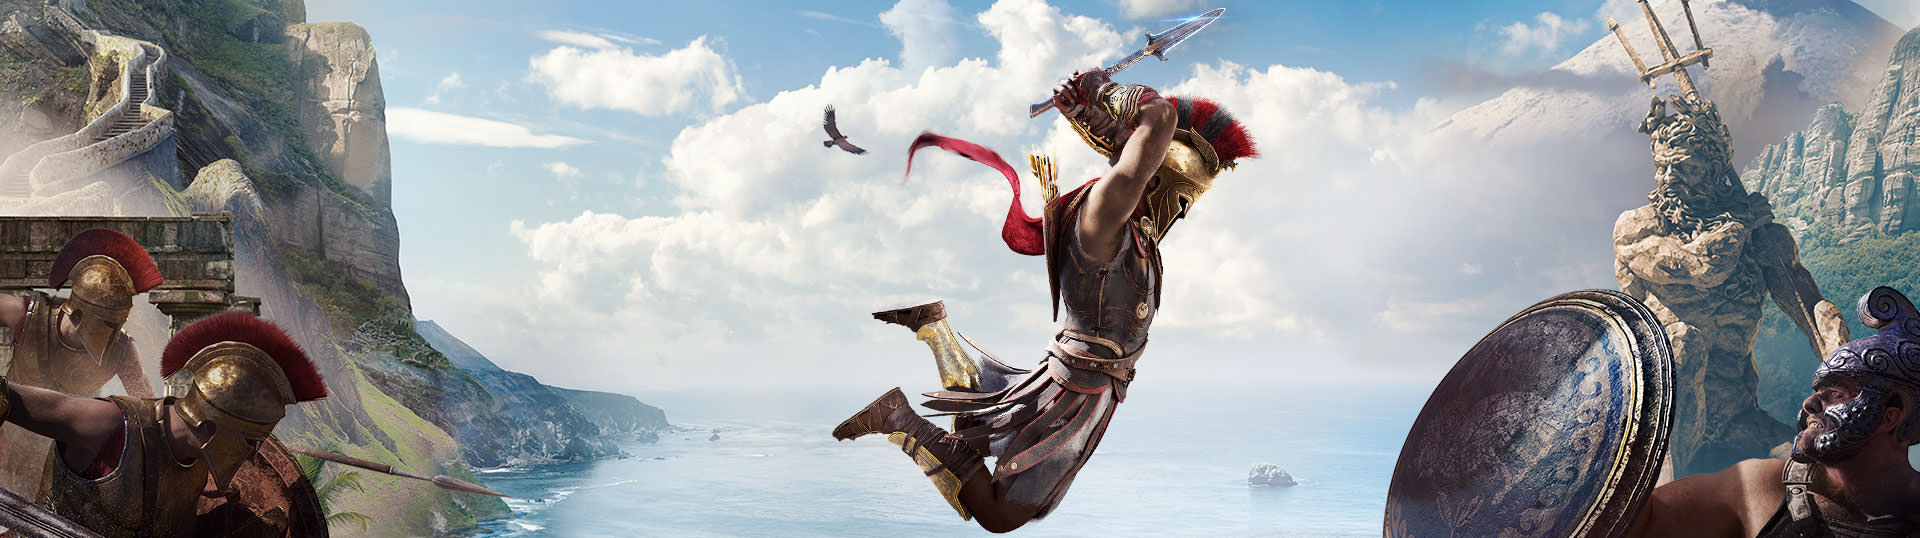 Ассасин крид одиссея крепости. Assassins Creed Одиссея Gold Edition. Assassin's Creed Odyssey Gold Edition ps4. Архидам Assassins Creed Odyssey. Assassin's Creed Odyssey Spartan Edition.